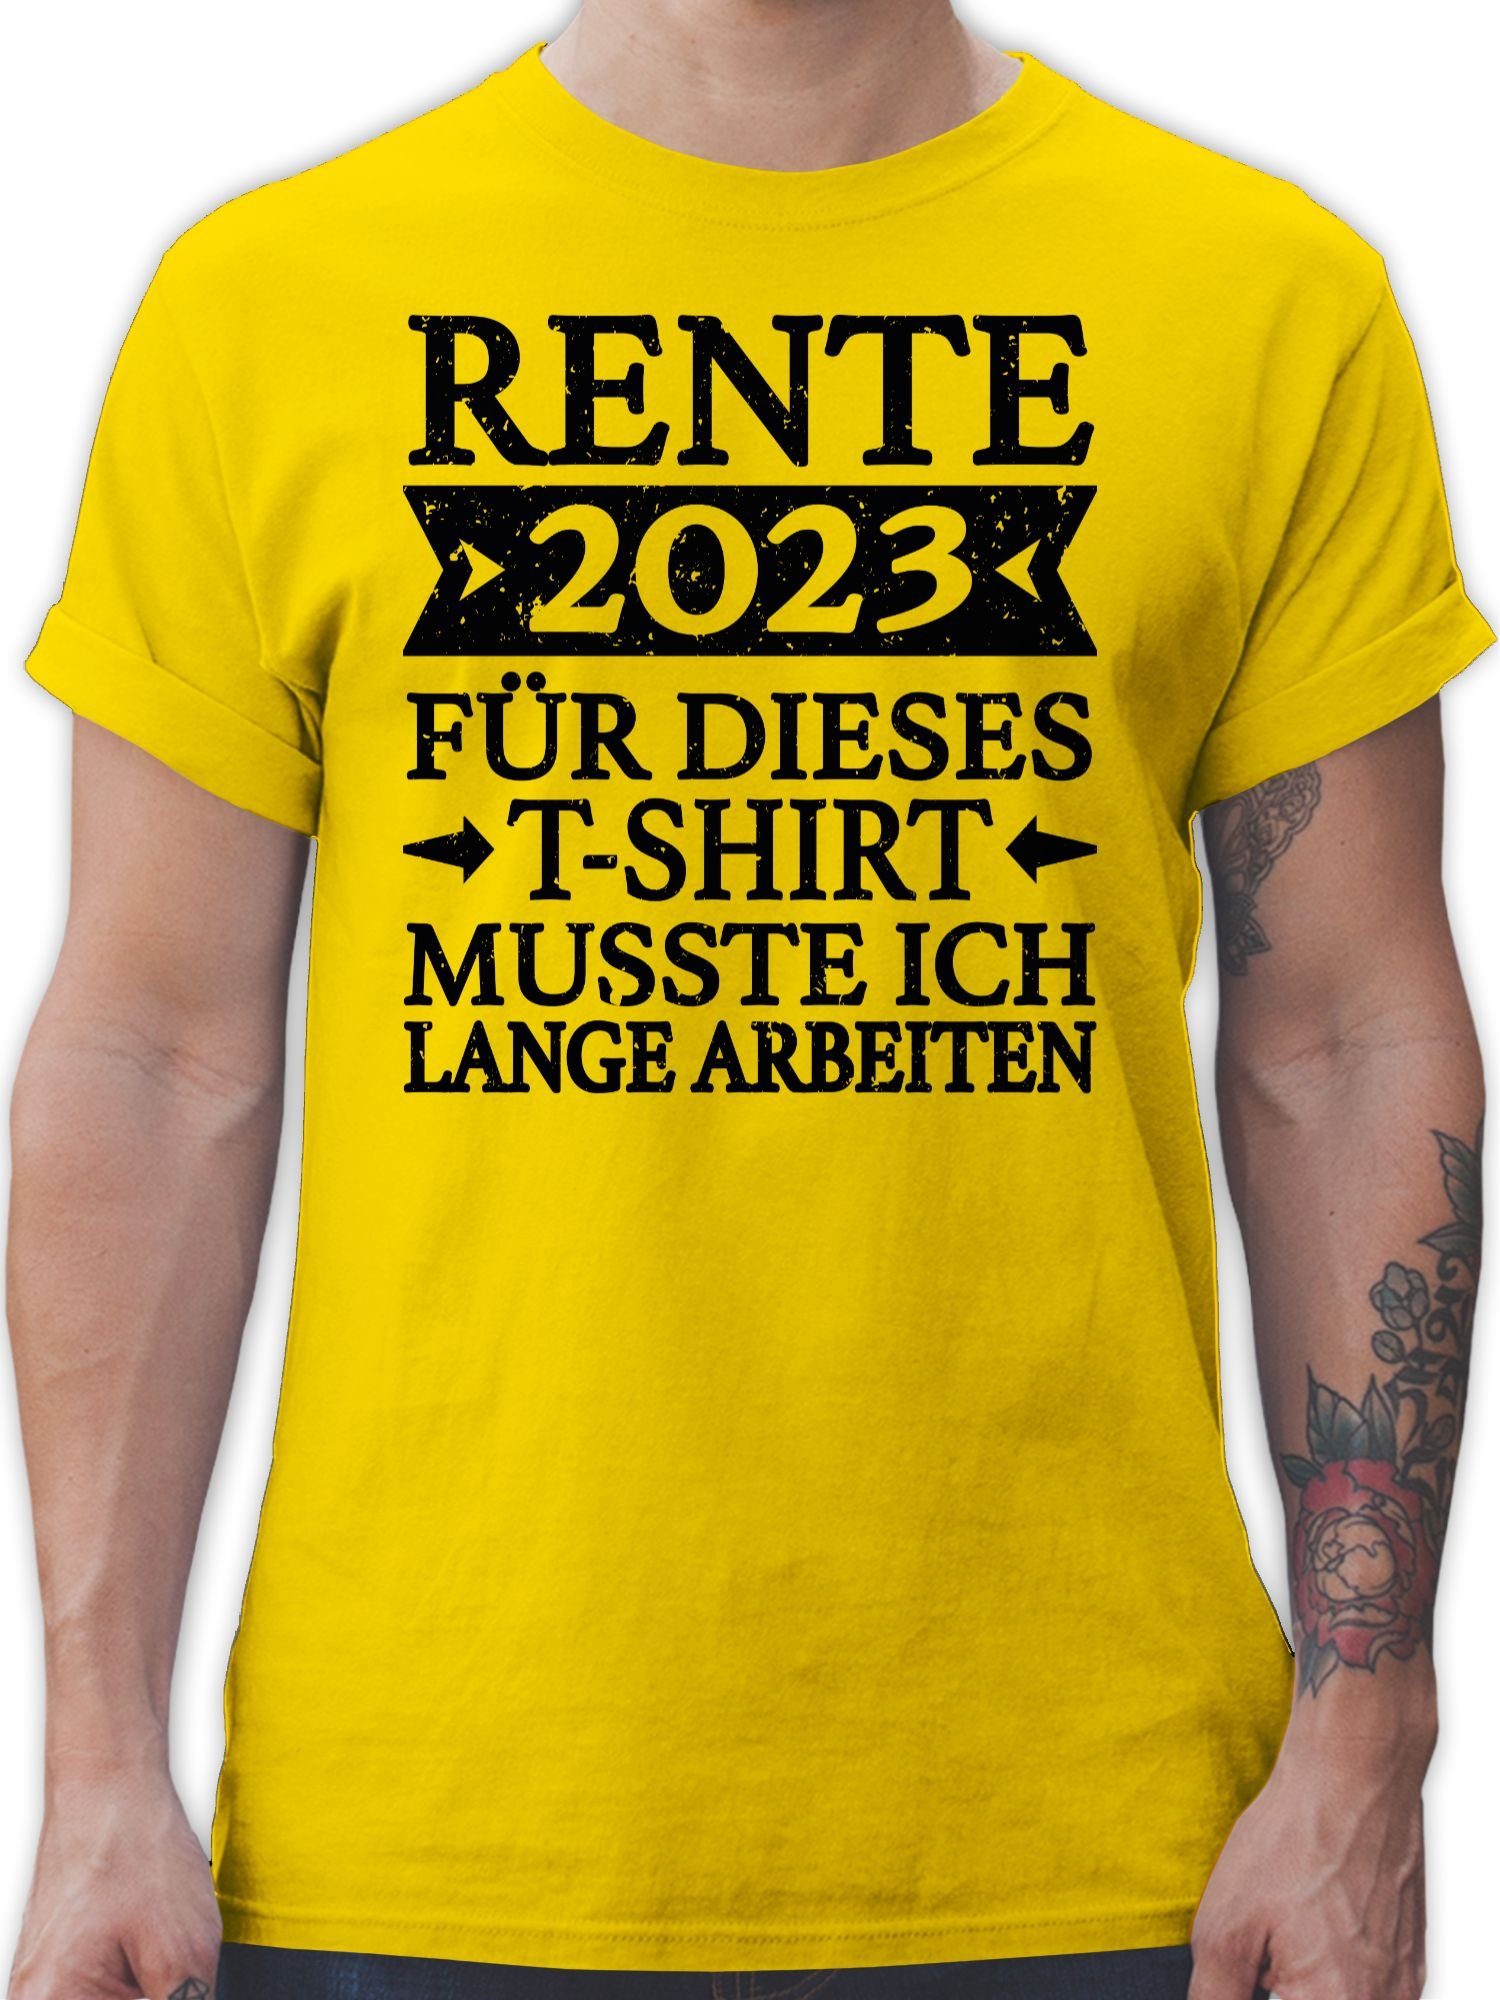 Shirtracer T-Shirt Rente ich 2023 T-Shirt dieses musste schwarz Geschenk für lange 3 arbeiten Gelb - Rentner